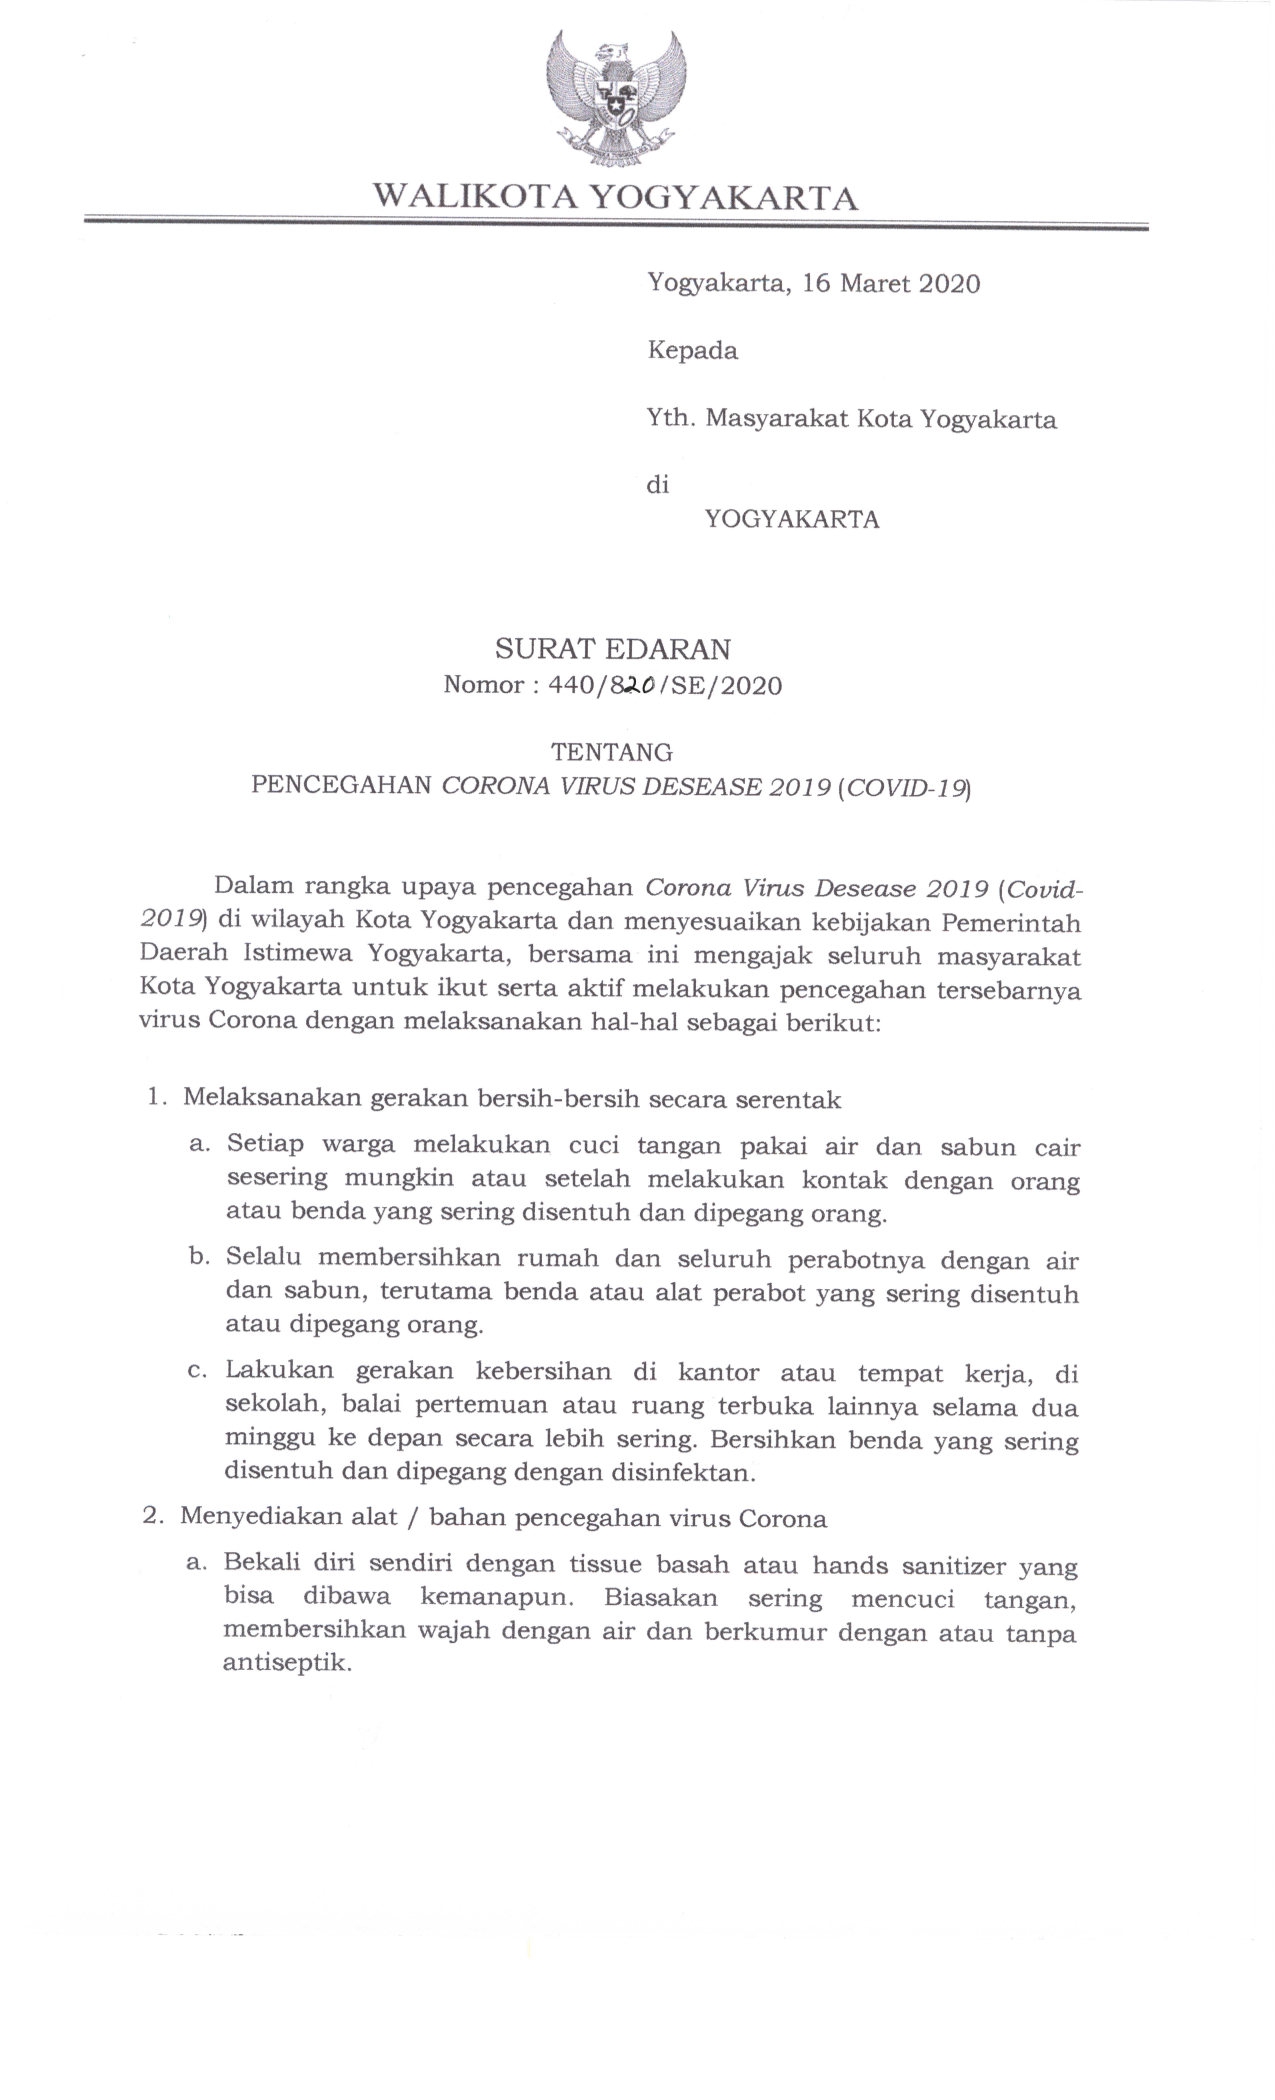 Surat Edaran Walikota Yogyakarta Tentang Pencegahan COVID-19